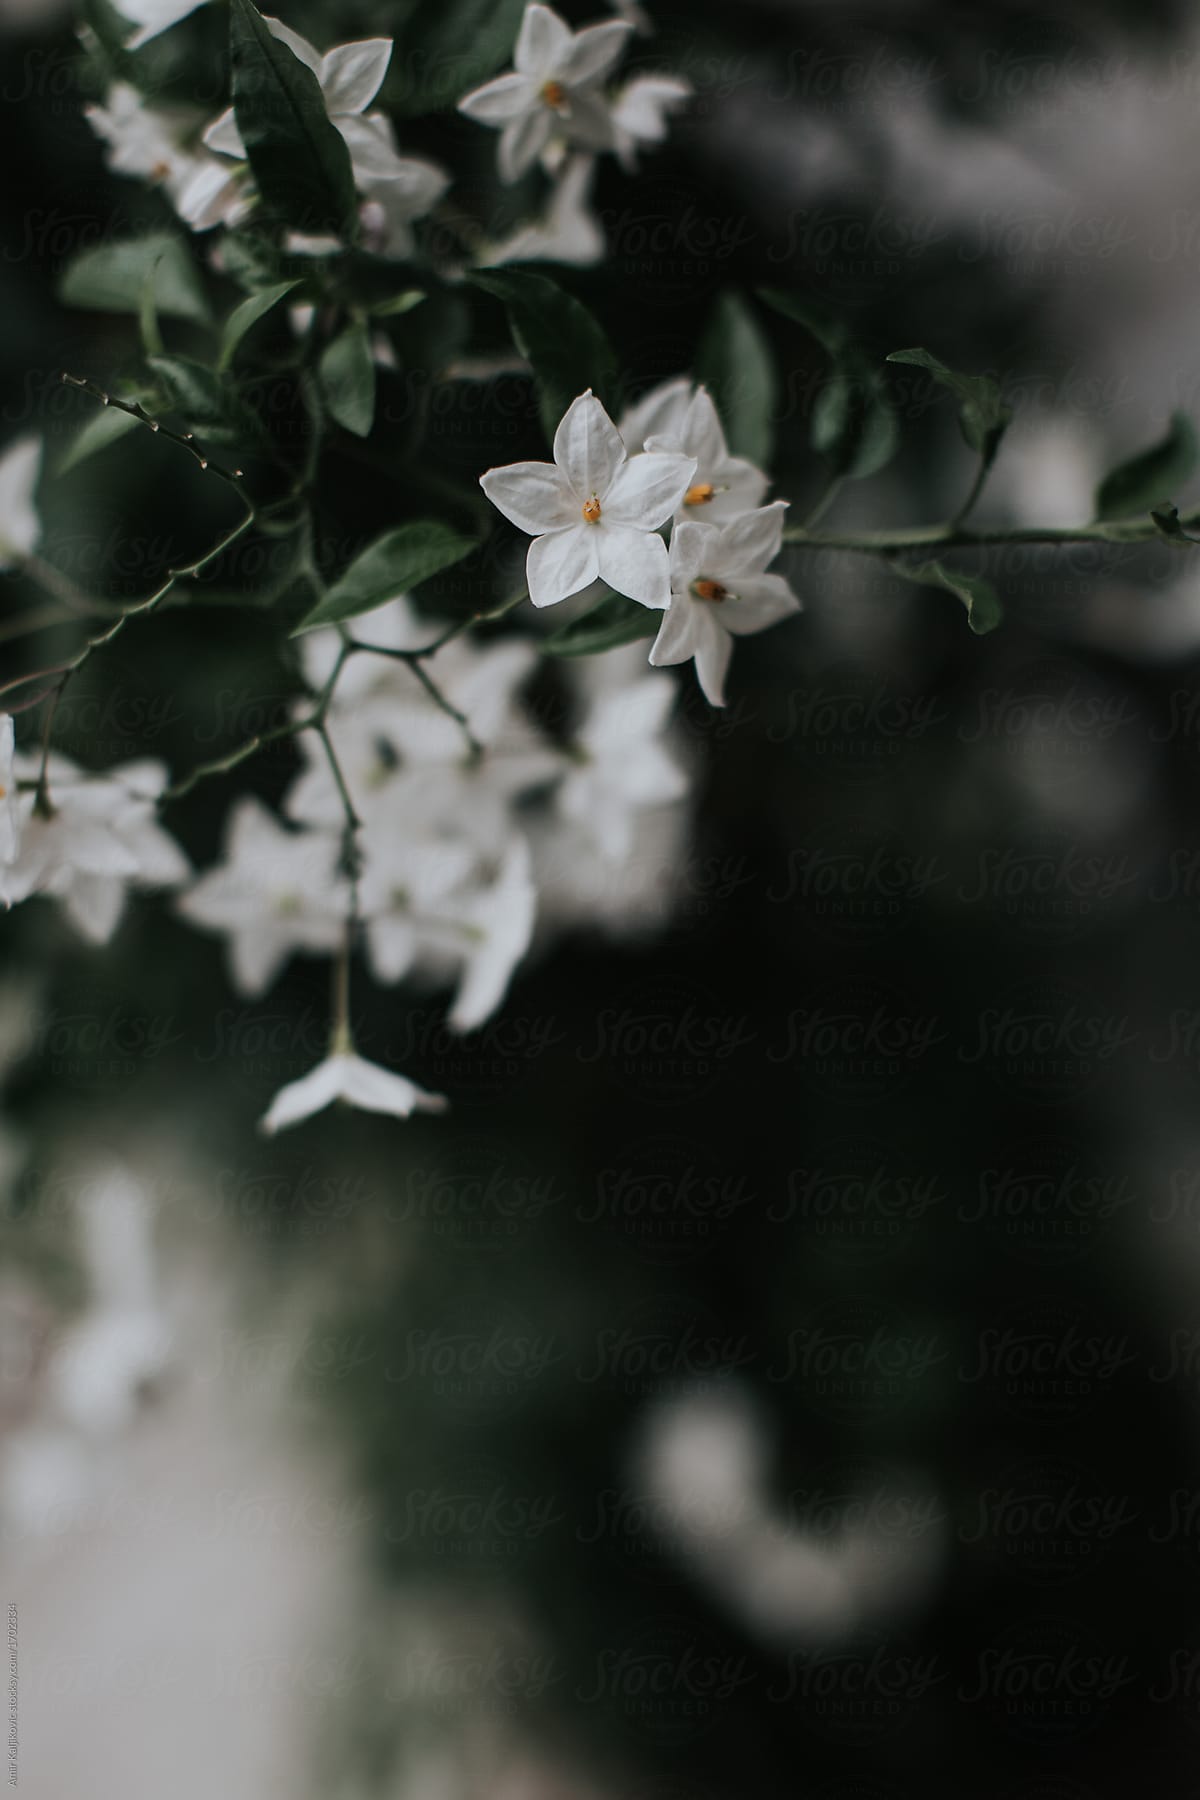 Cluster of fragrant white jasmine flowers